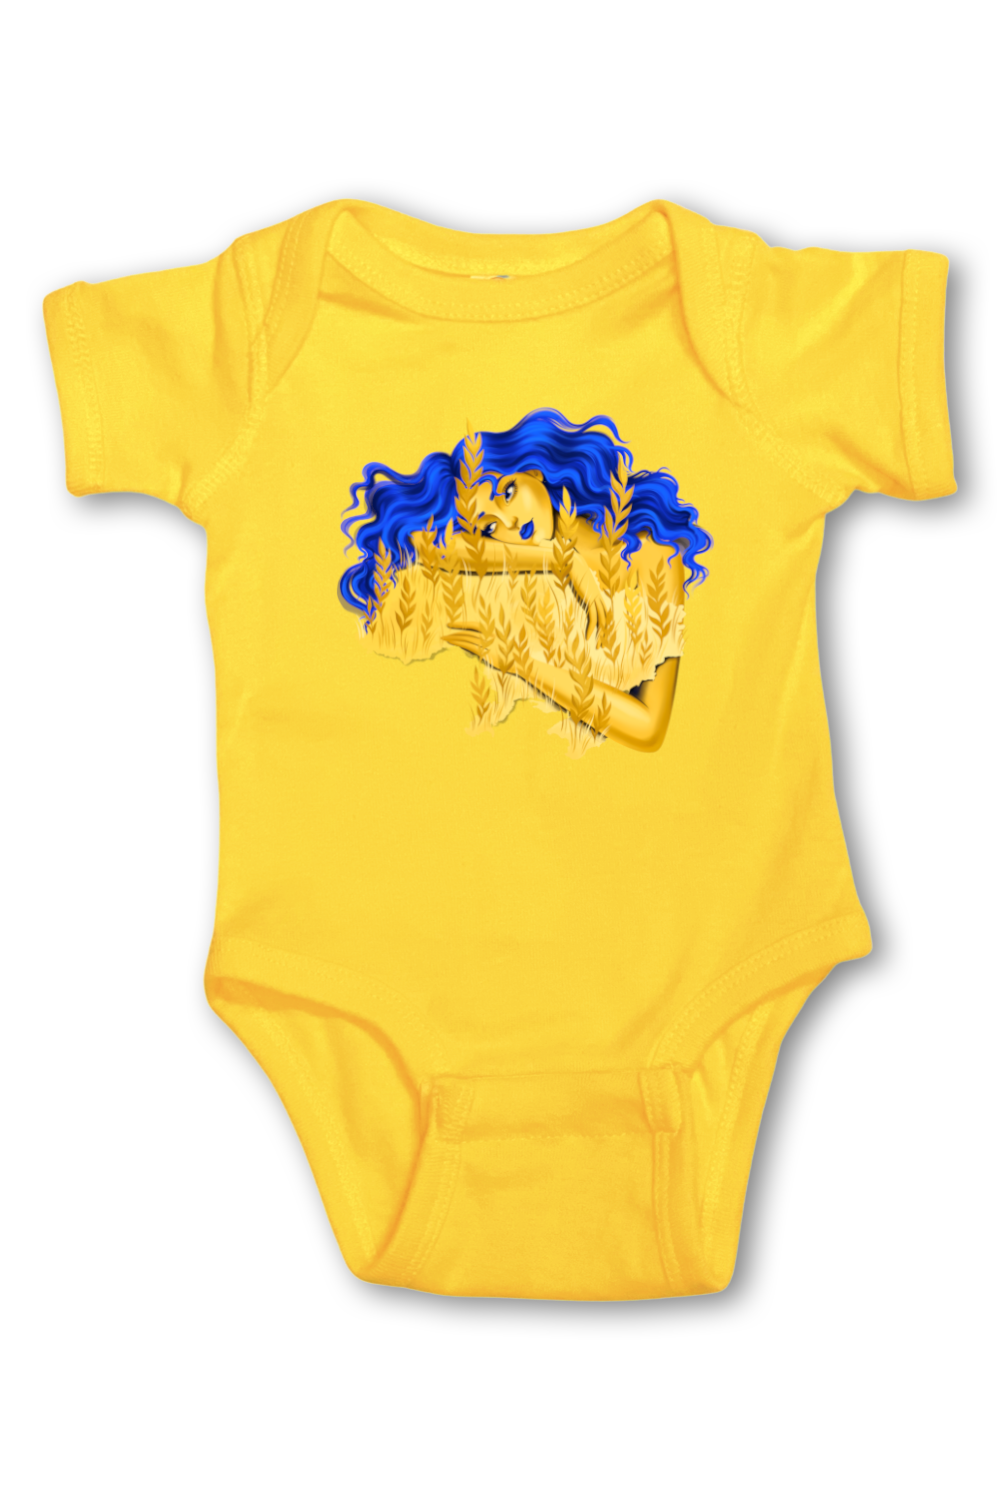 Infant onesie bodysuit "Berehynia"